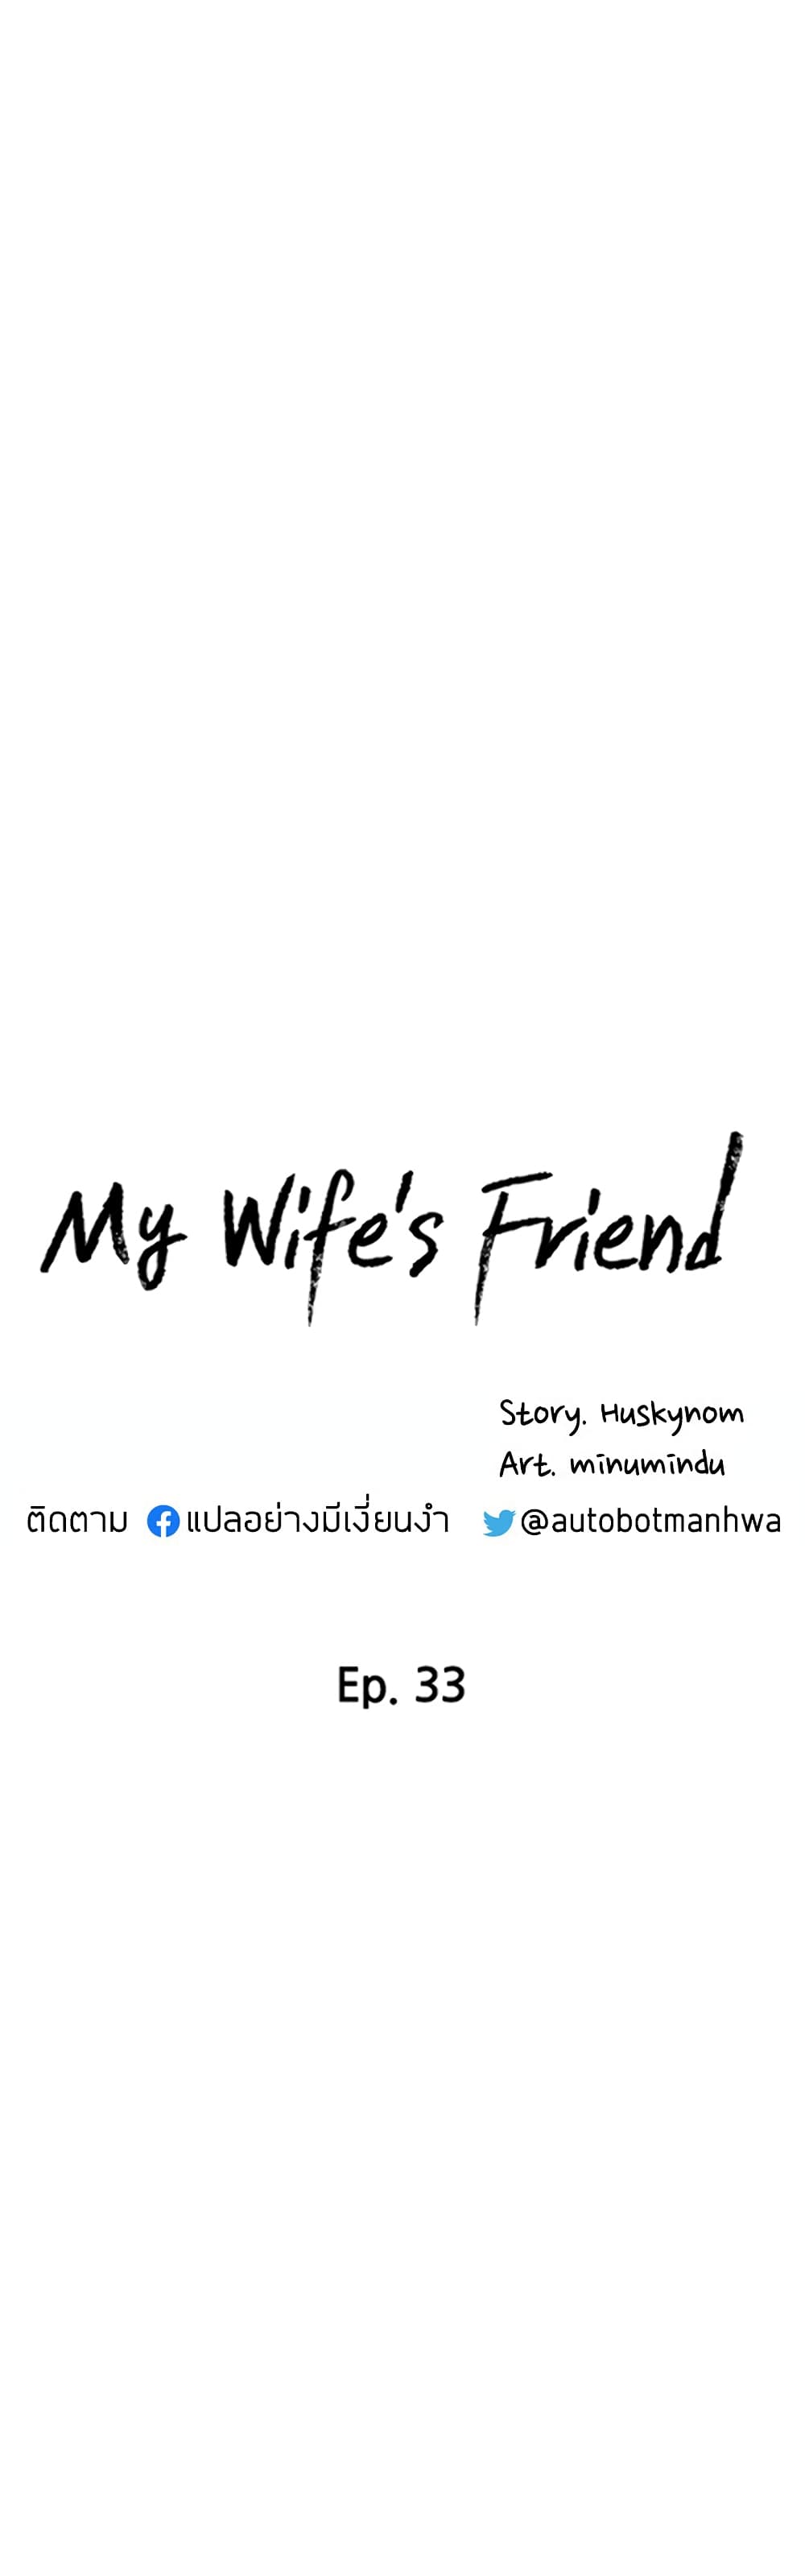 My Wife's Friend 33 03